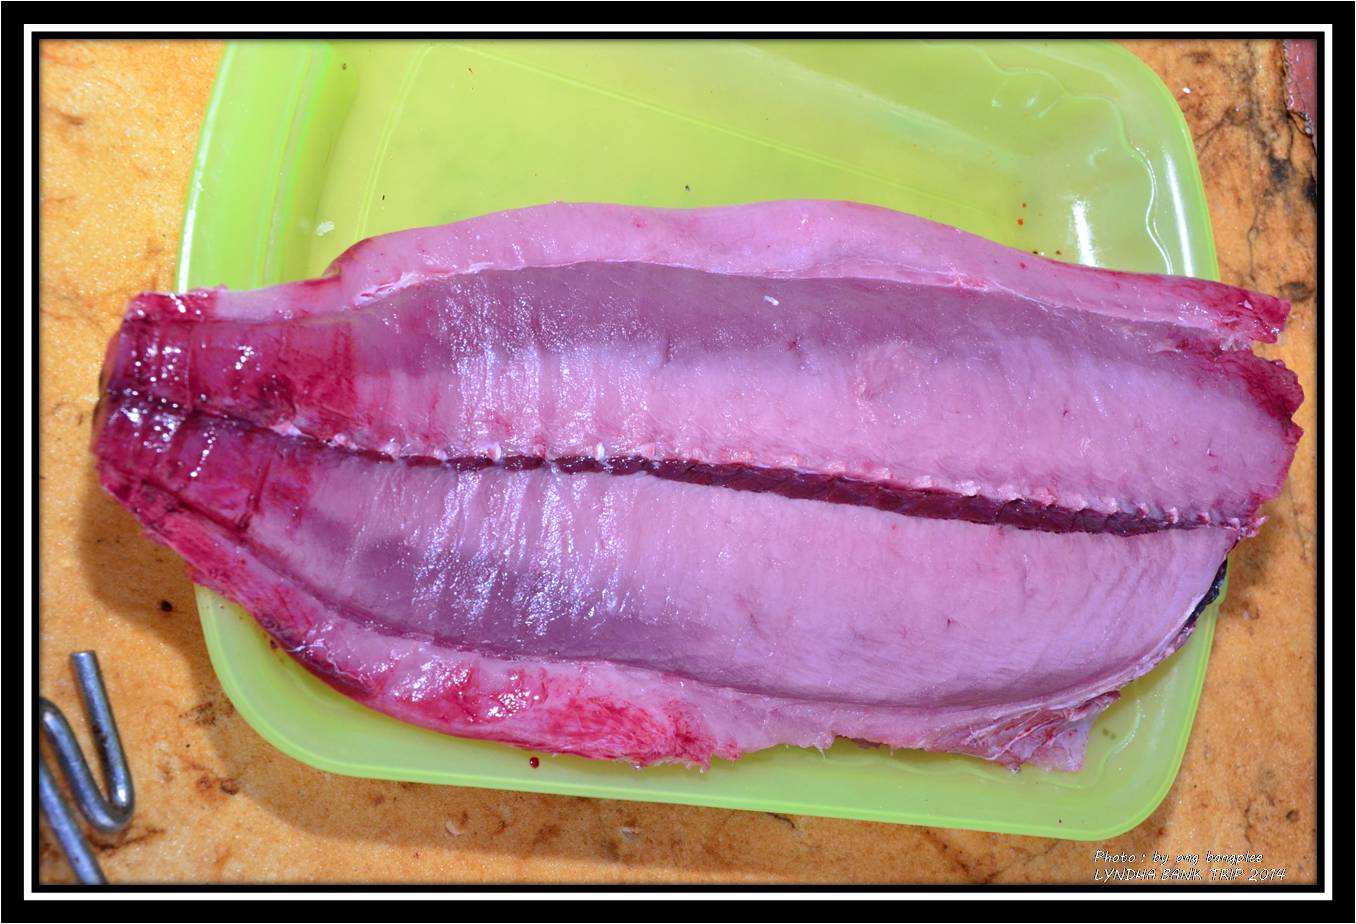 เยลโล่...เมื่อได้ปลาขึ้นมาต้องแทงคอให้เลือดไหลออกให้หมด...เพื่อให้เนื้อปลาไม่คาวเลือดอย่าให้โดนน้ำคร